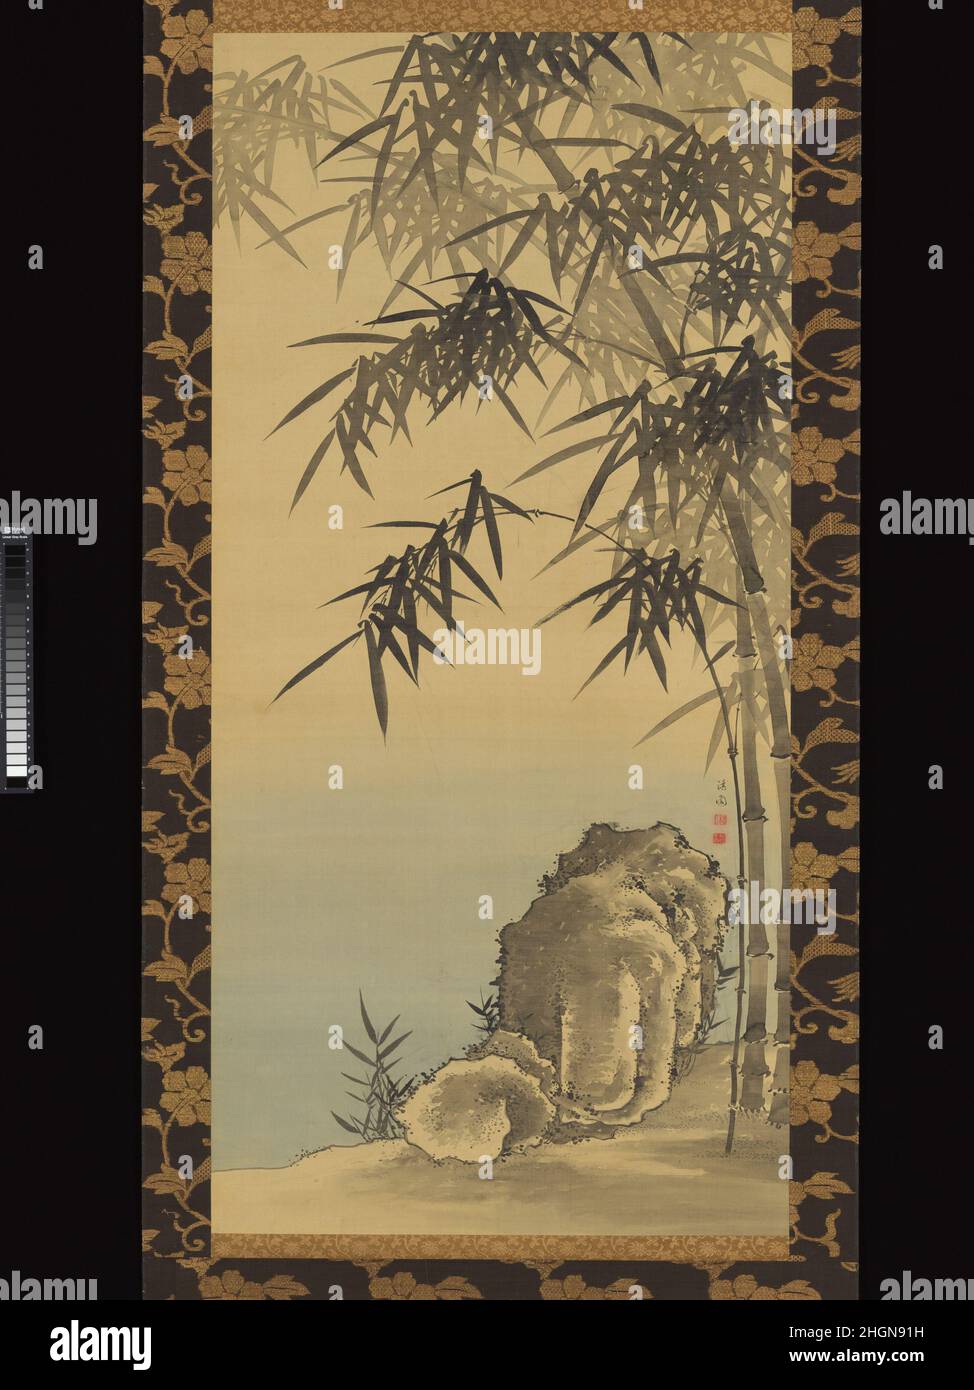 Pietra e bambù 18th secolo Yanagisawa Kien questa semplice composizione di uno stand di bambù che si piega su una roccia angolare, sfaccettata è opera di Yanagisawa Kien, che ha creato numerosi dipinti di bambù, fiori e uccelli, e altri soggetti popolari tra gli artisti della scuola Nanga precoce. Il bambù era un motivo favorito tra i pittori come simbolo di virtù e di fortezza accademica. Qui, la configurazione monumentale (a dispetto delle sue dimensioni) della roccia, e la manipolazione fluida e ritmica del pennello nel trattamento delle foglie di bambù, insieme alle variazioni dei toni dell'inchiostro, suggeriscono che l'artis Foto Stock